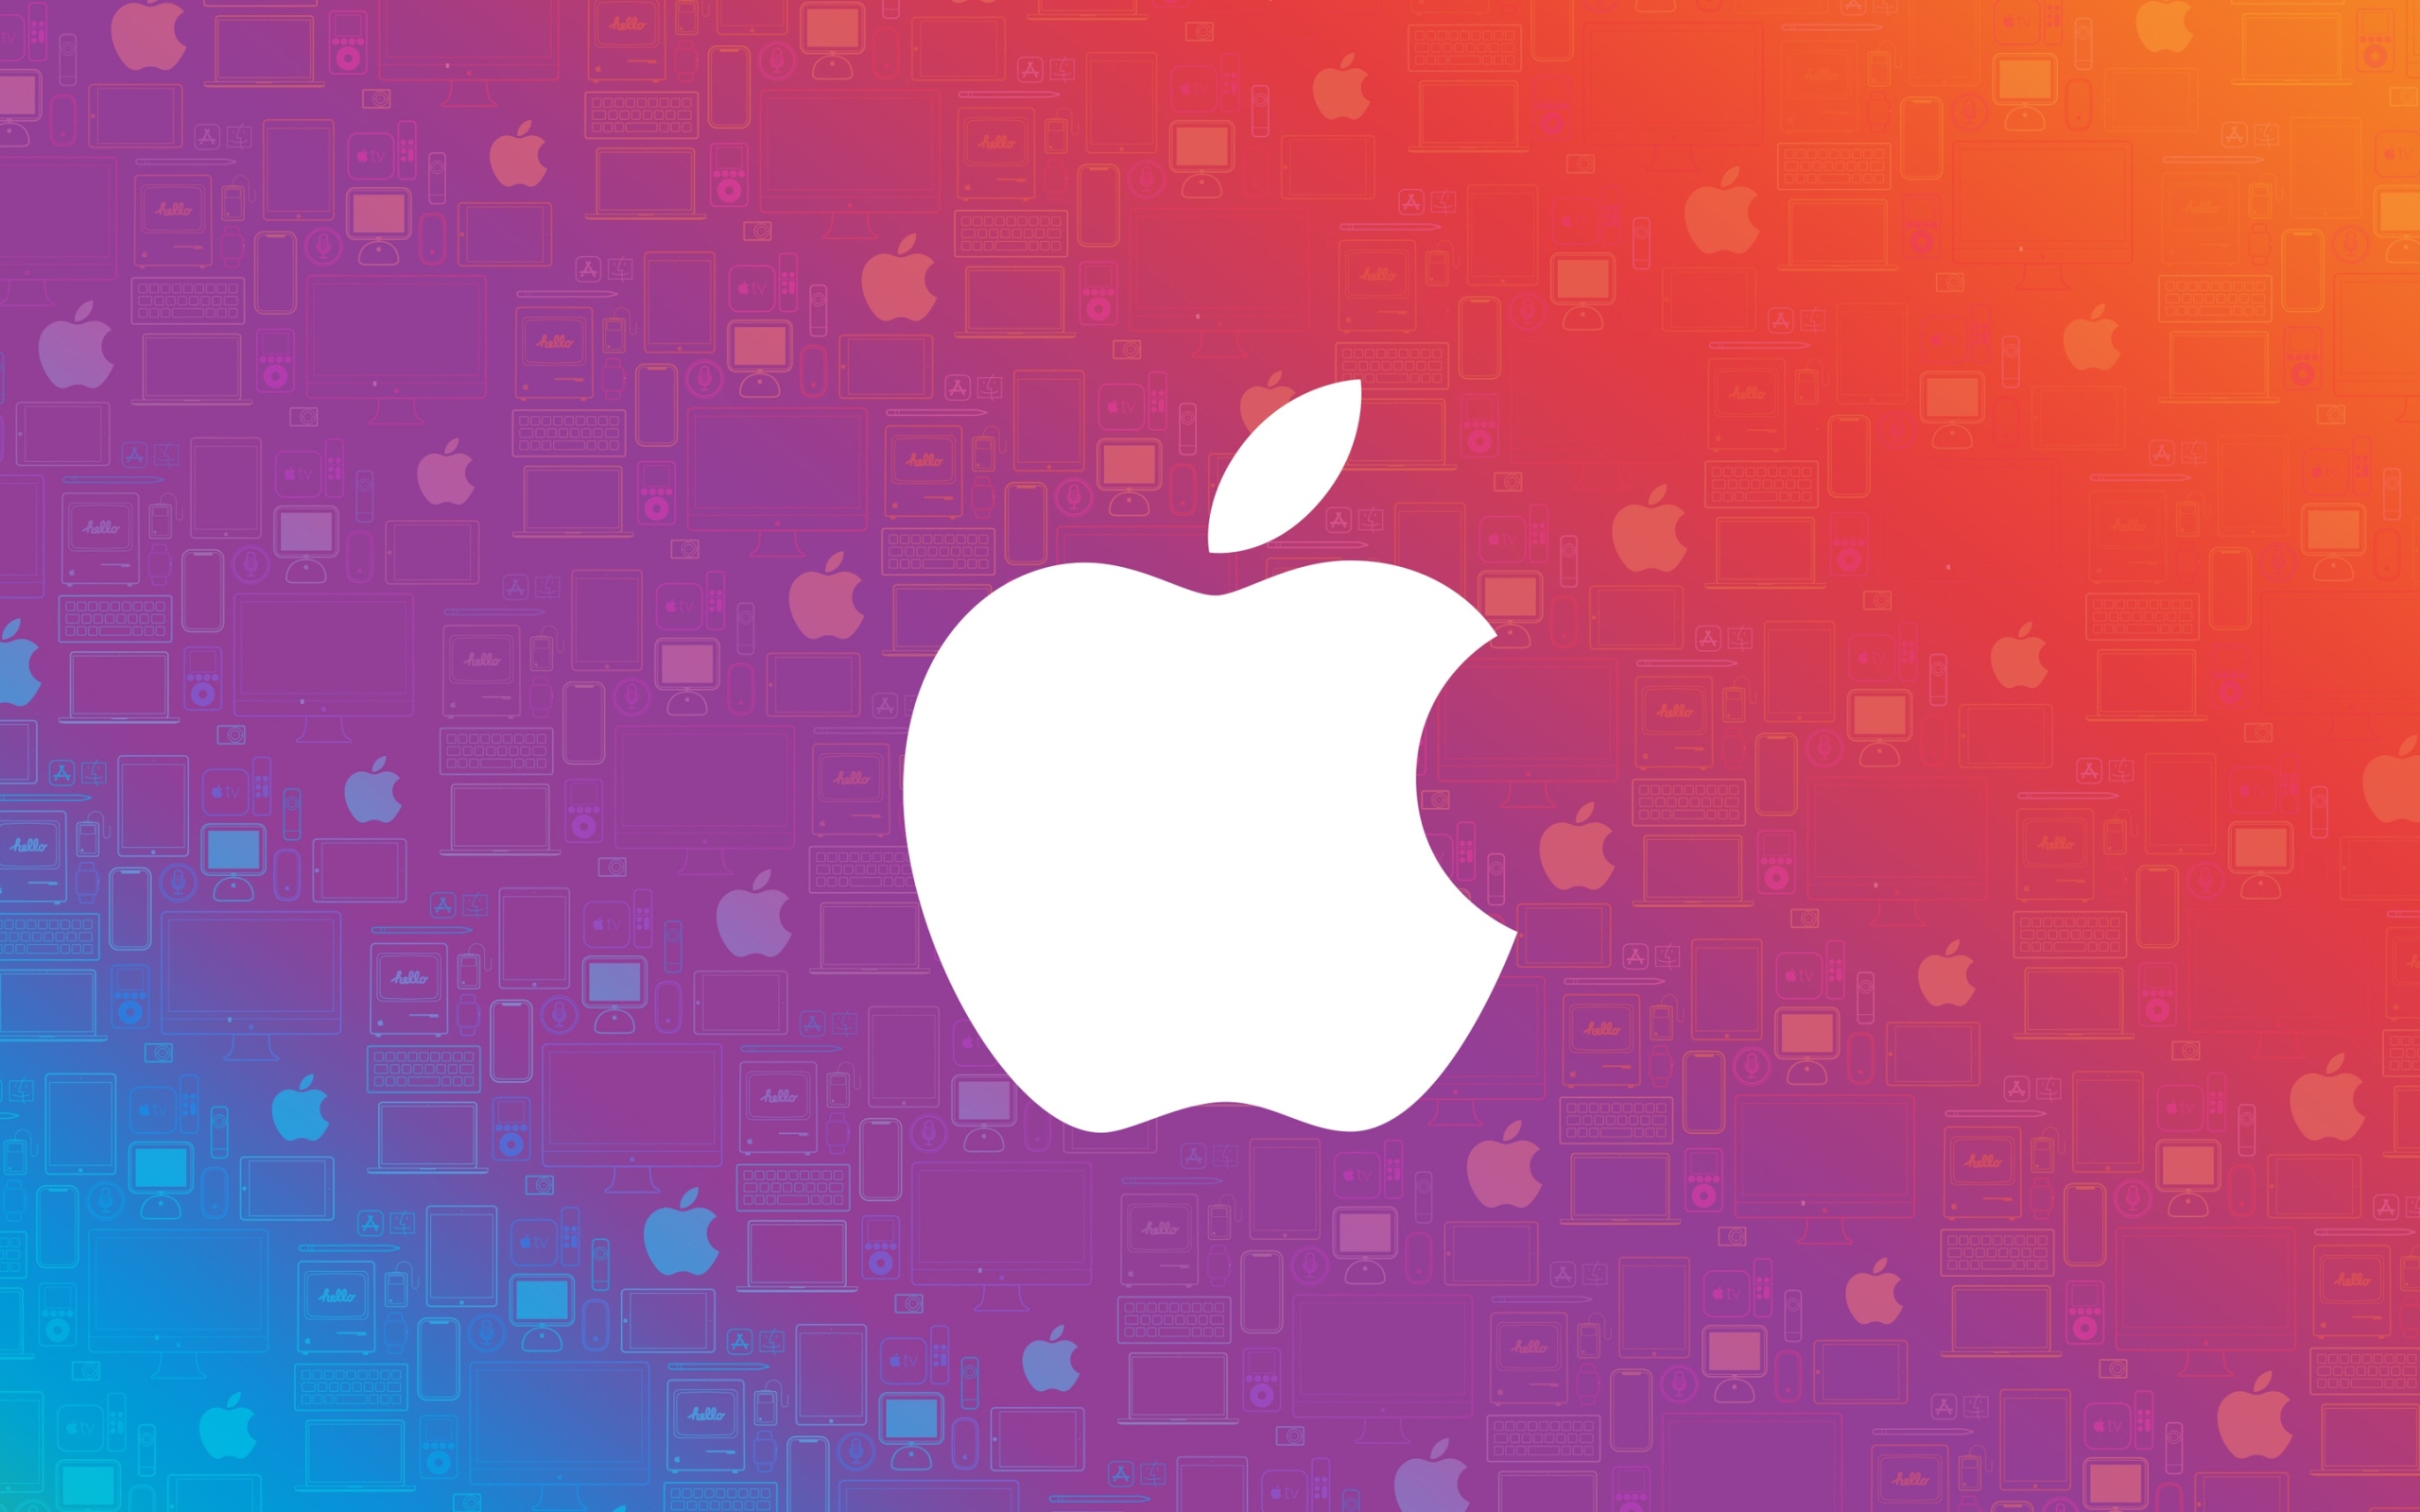 Apple Inc Logo Wallpaper Background Image   uBackgroundcom 2560x1600